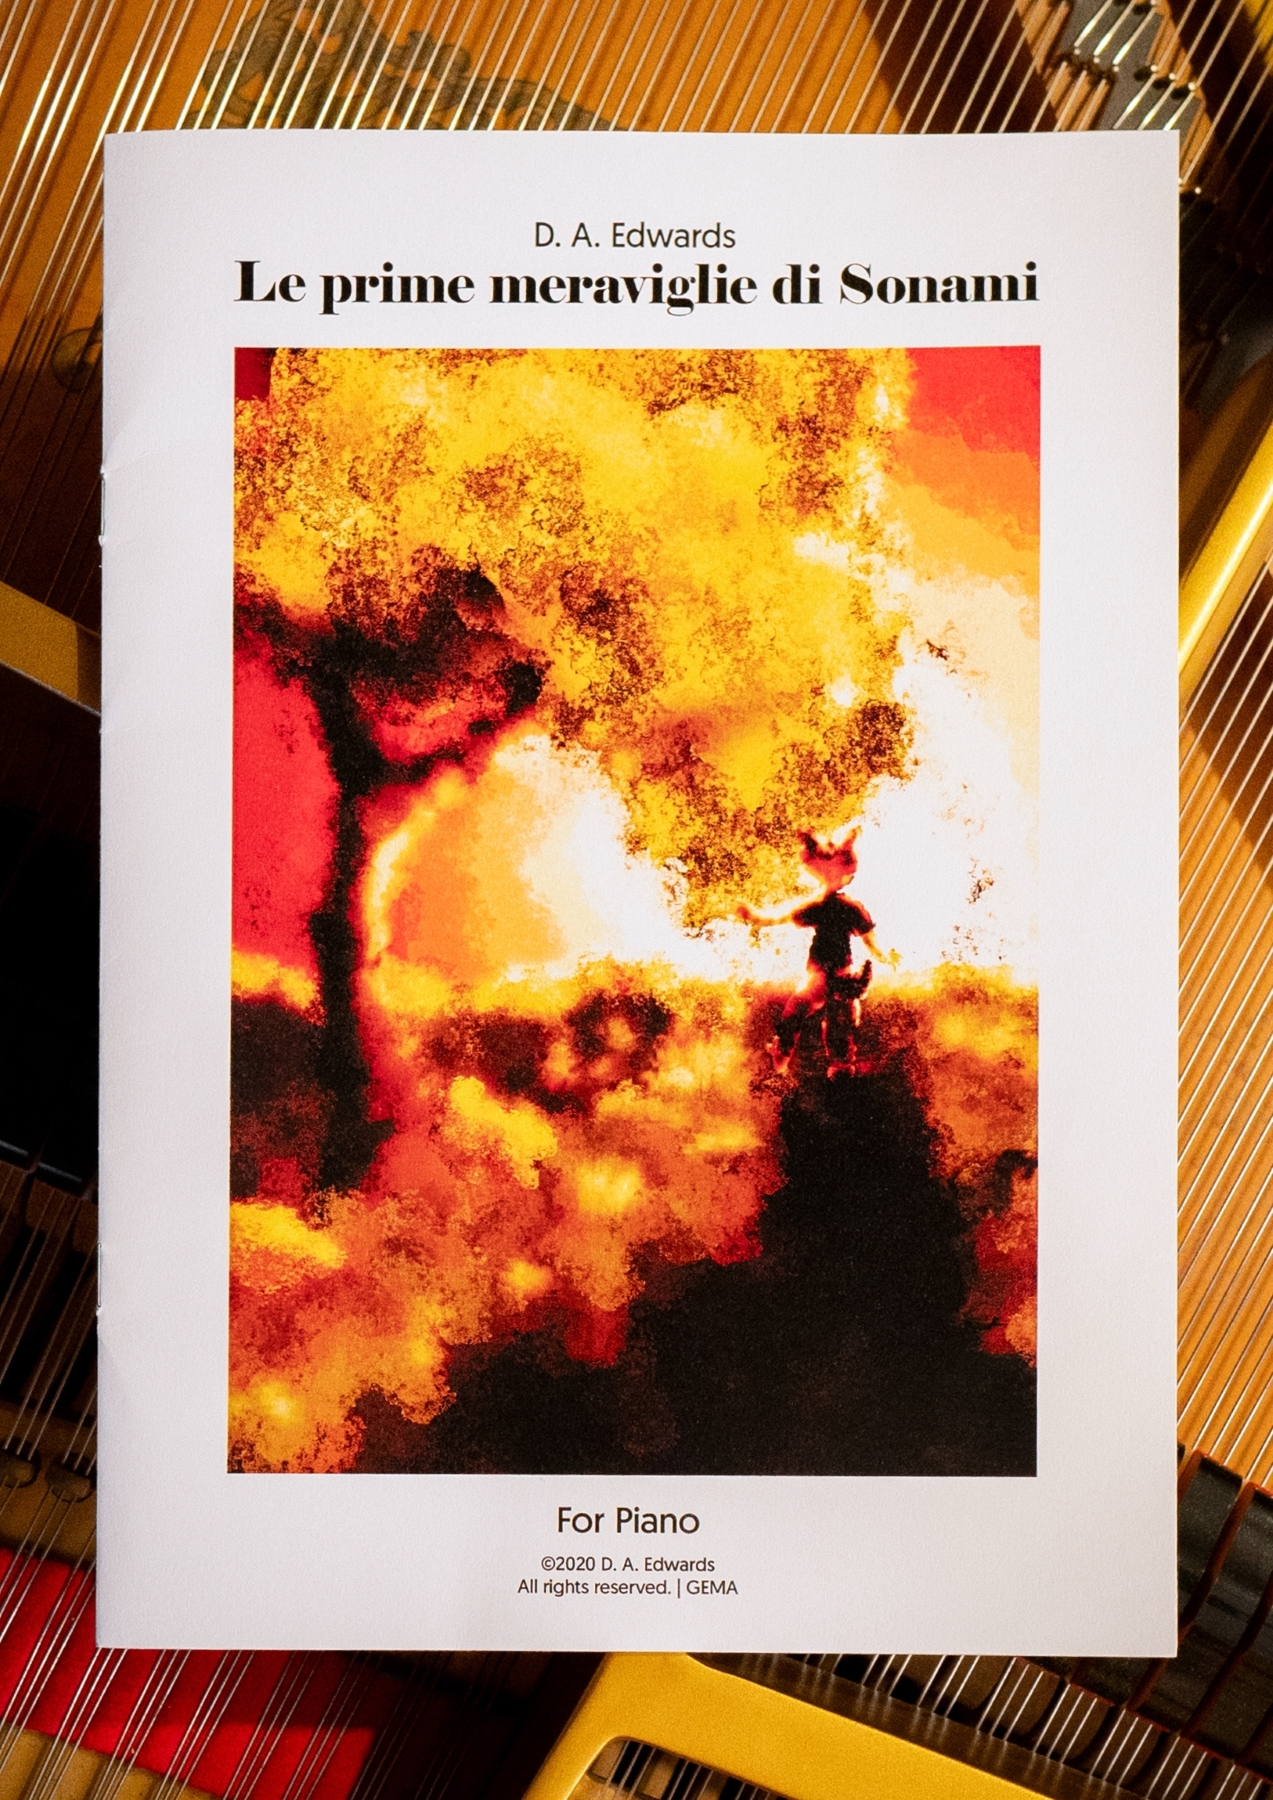 Le prime meraviglie di Sonami – Print edition